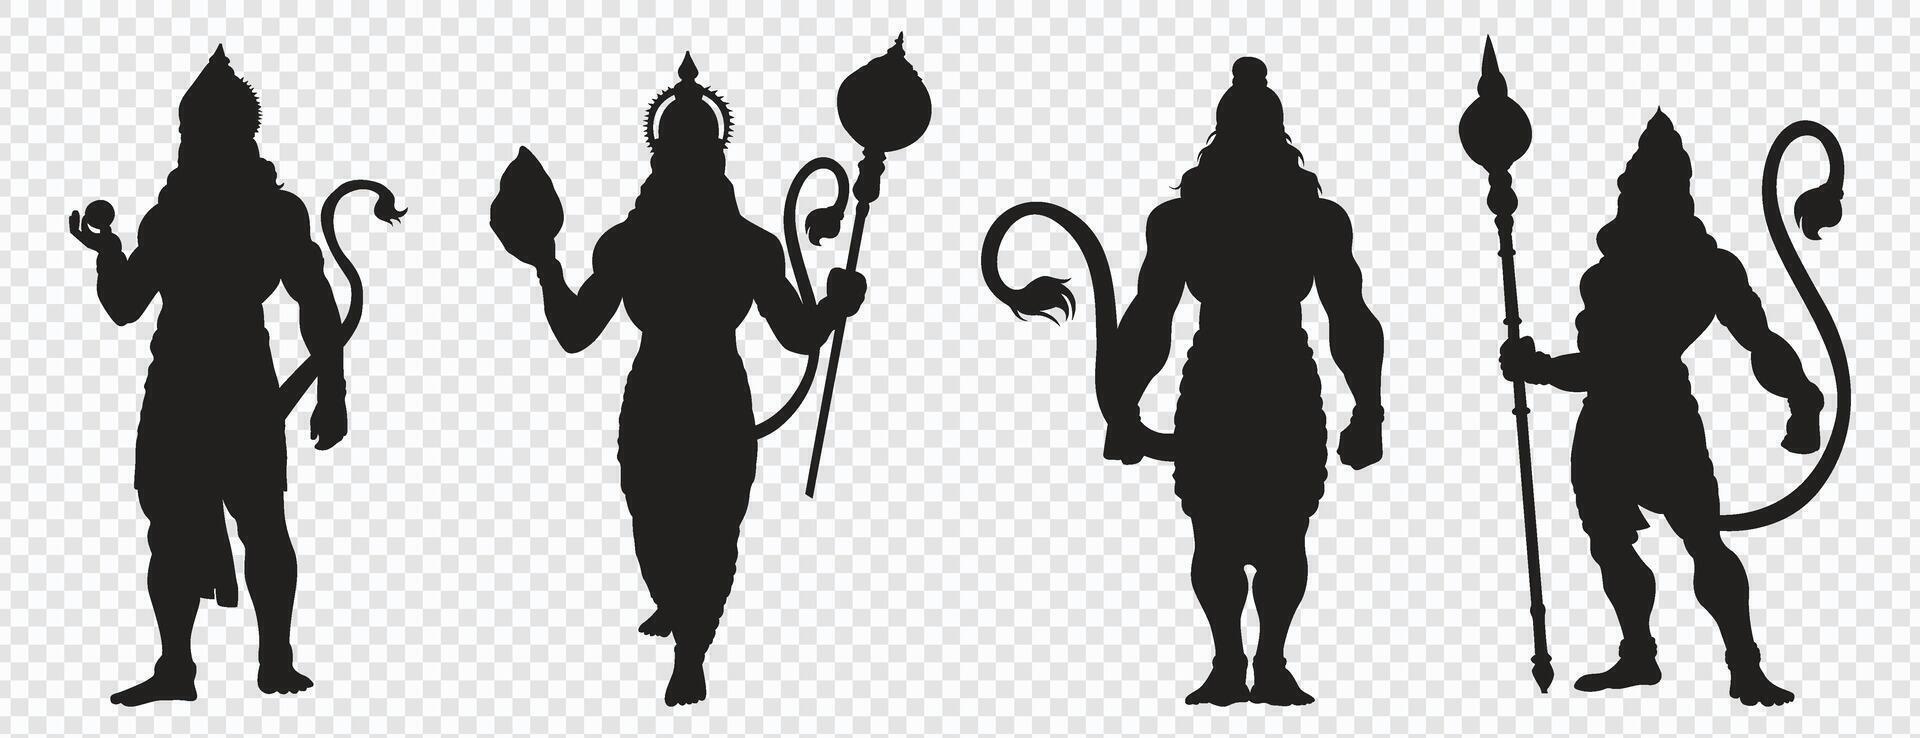 Hanuman silueta, arrendajo shri RAM, para, contento Hanuman jayanti, vector